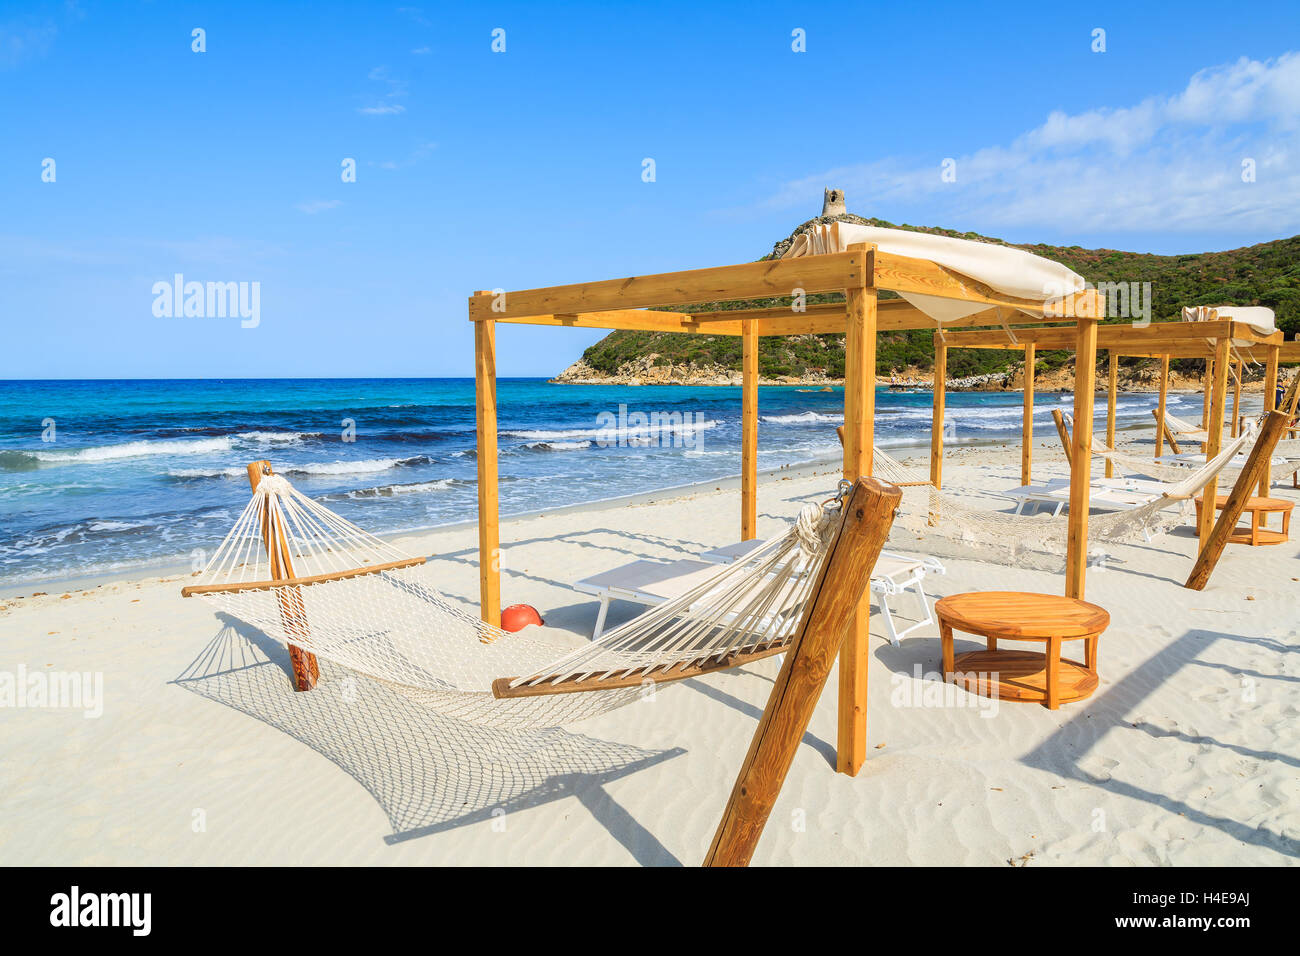 Hamacas en la playa de arena blanca en la bahía de Porto Giunco, Cerdeña, Italia Foto de stock